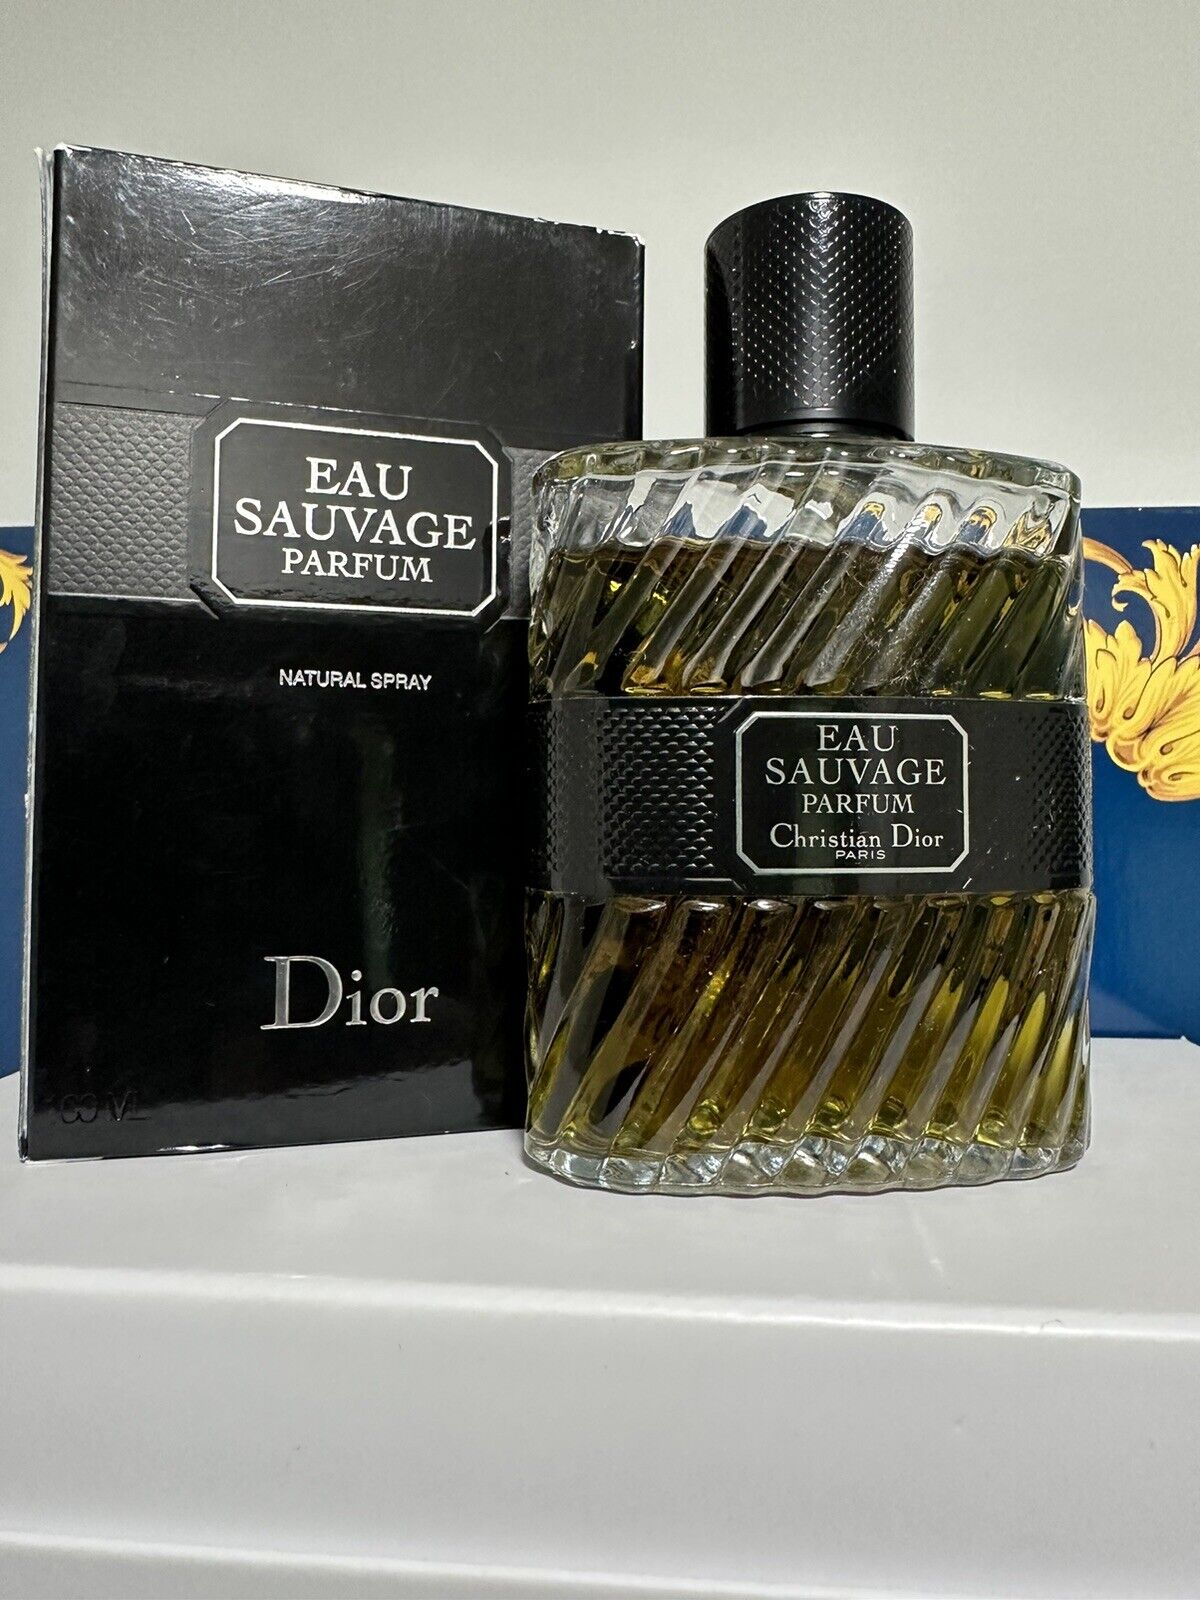 Vintage 2014 Dior Eau Sauvage Parfum 100ml / 3.4oz - Original Formula Authentic